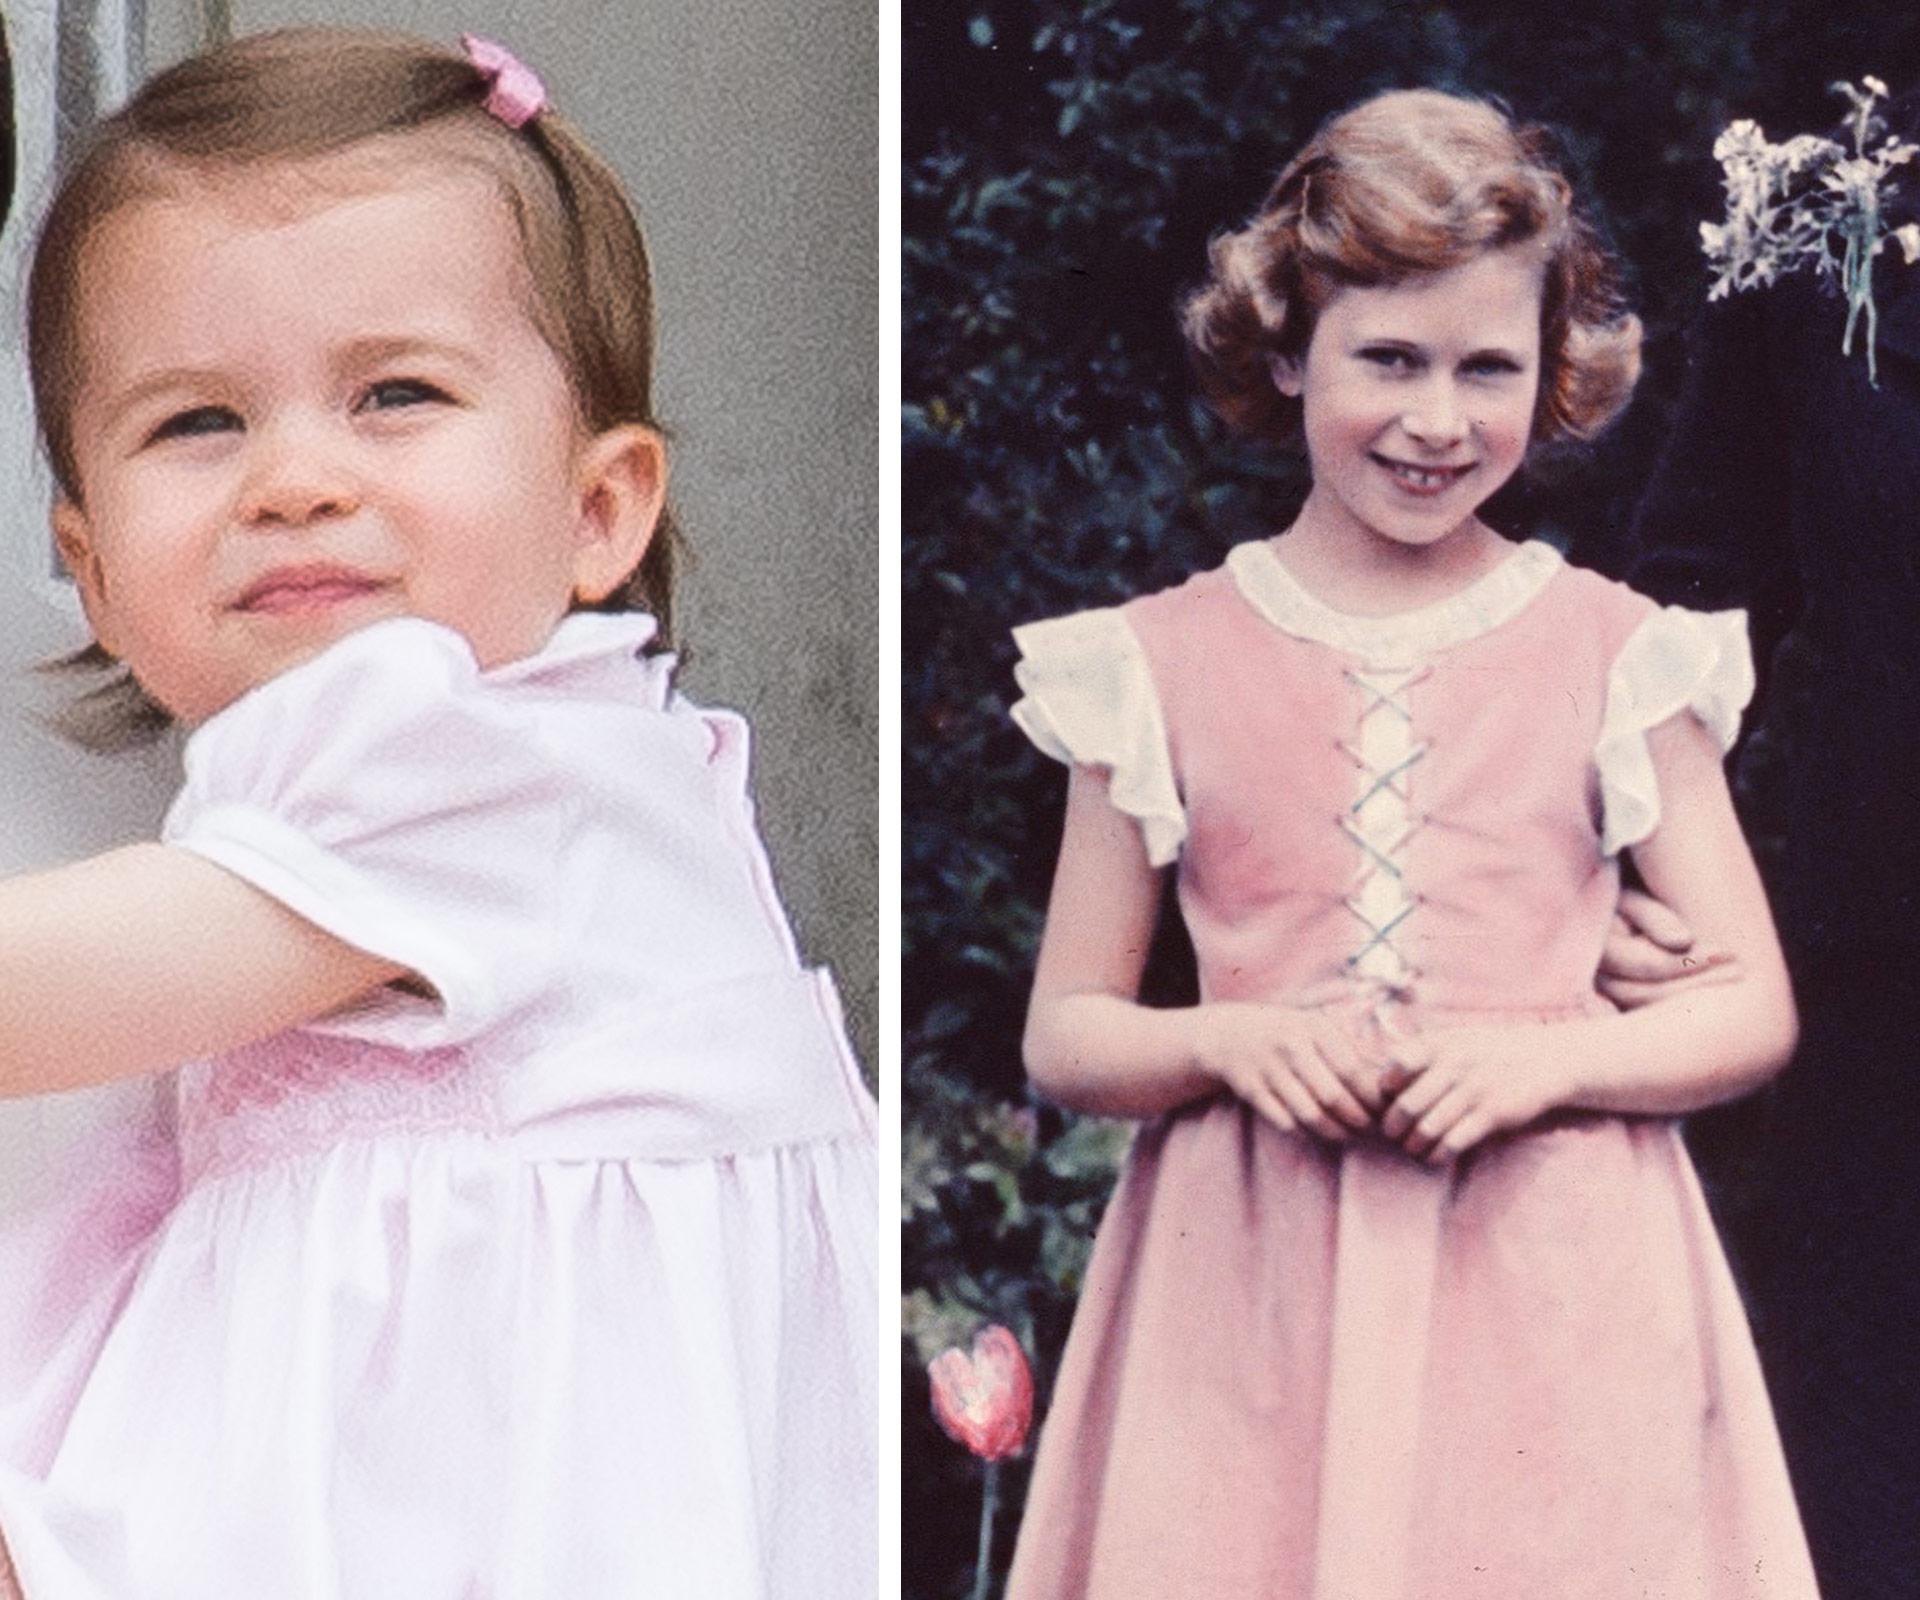 Who does Princess Charlotte look like?